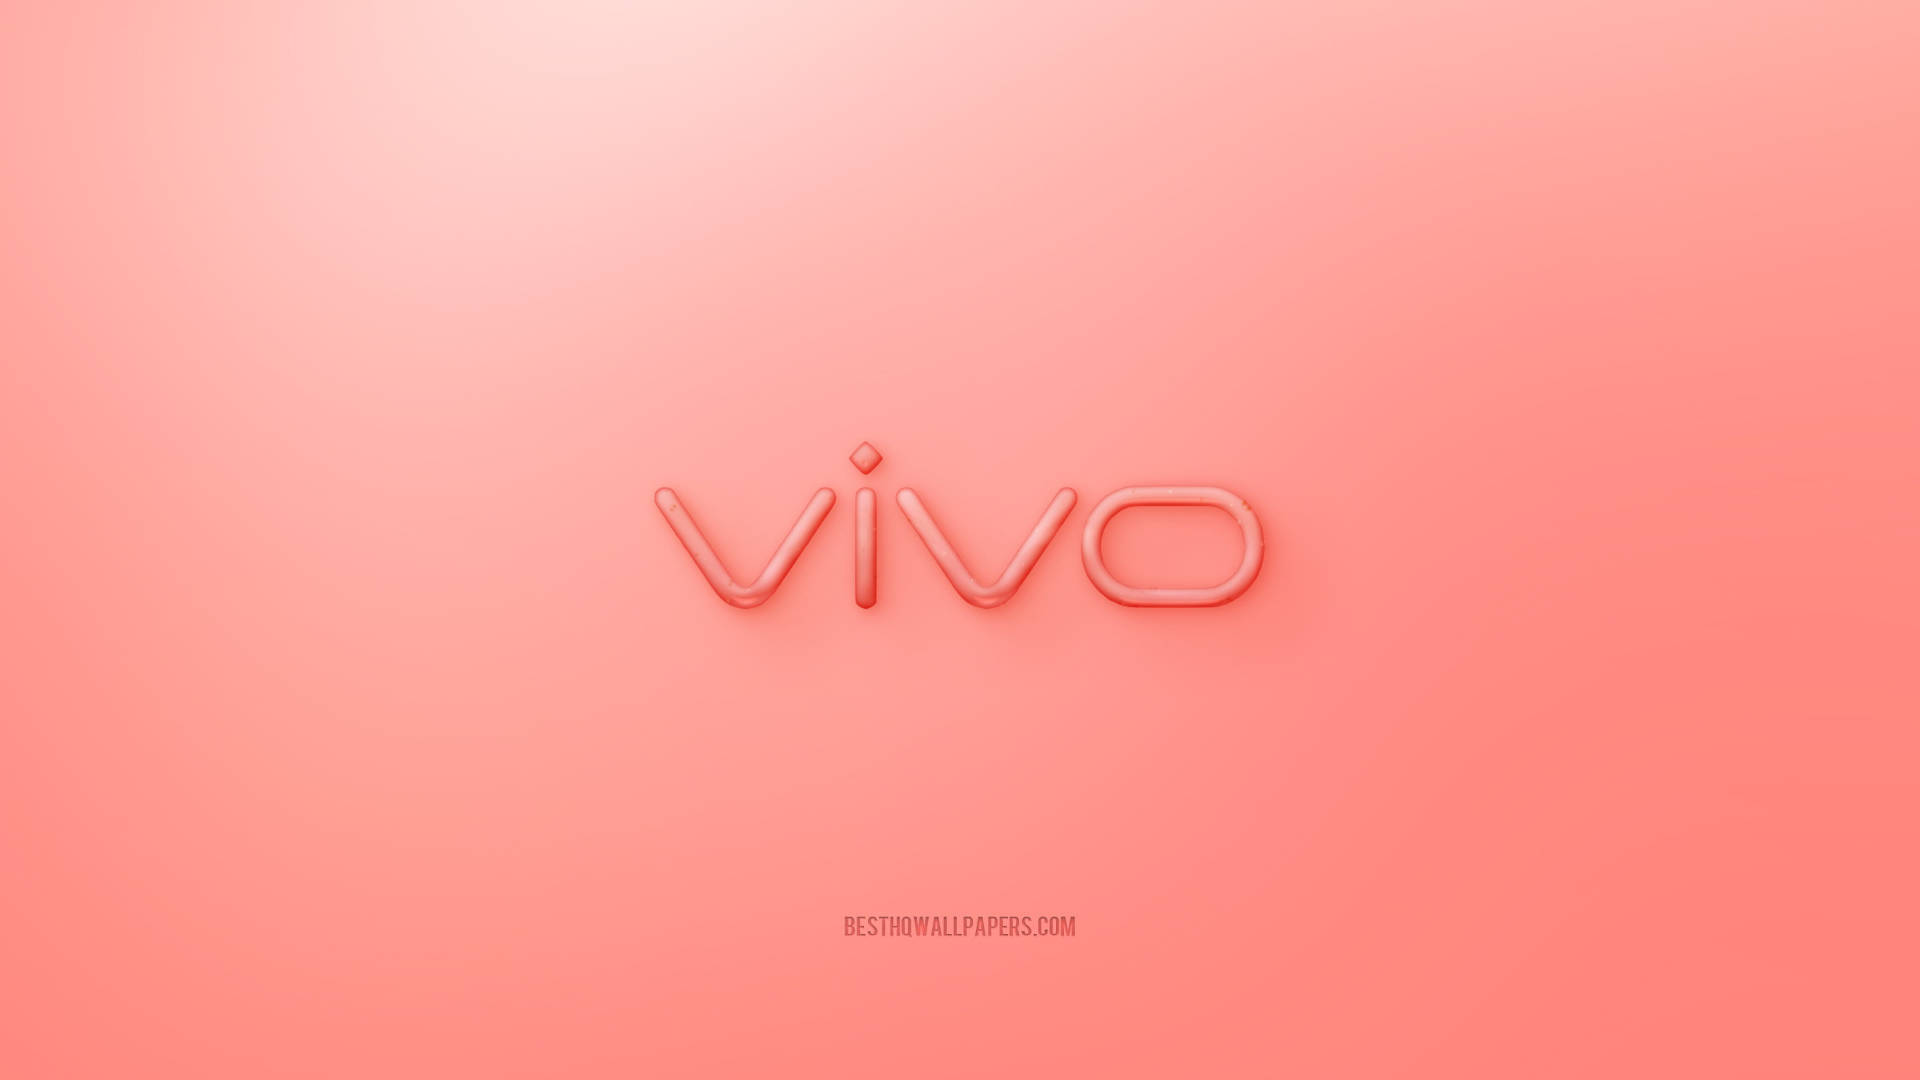 Logotipode Vivo En Color Durazno. Fondo de pantalla